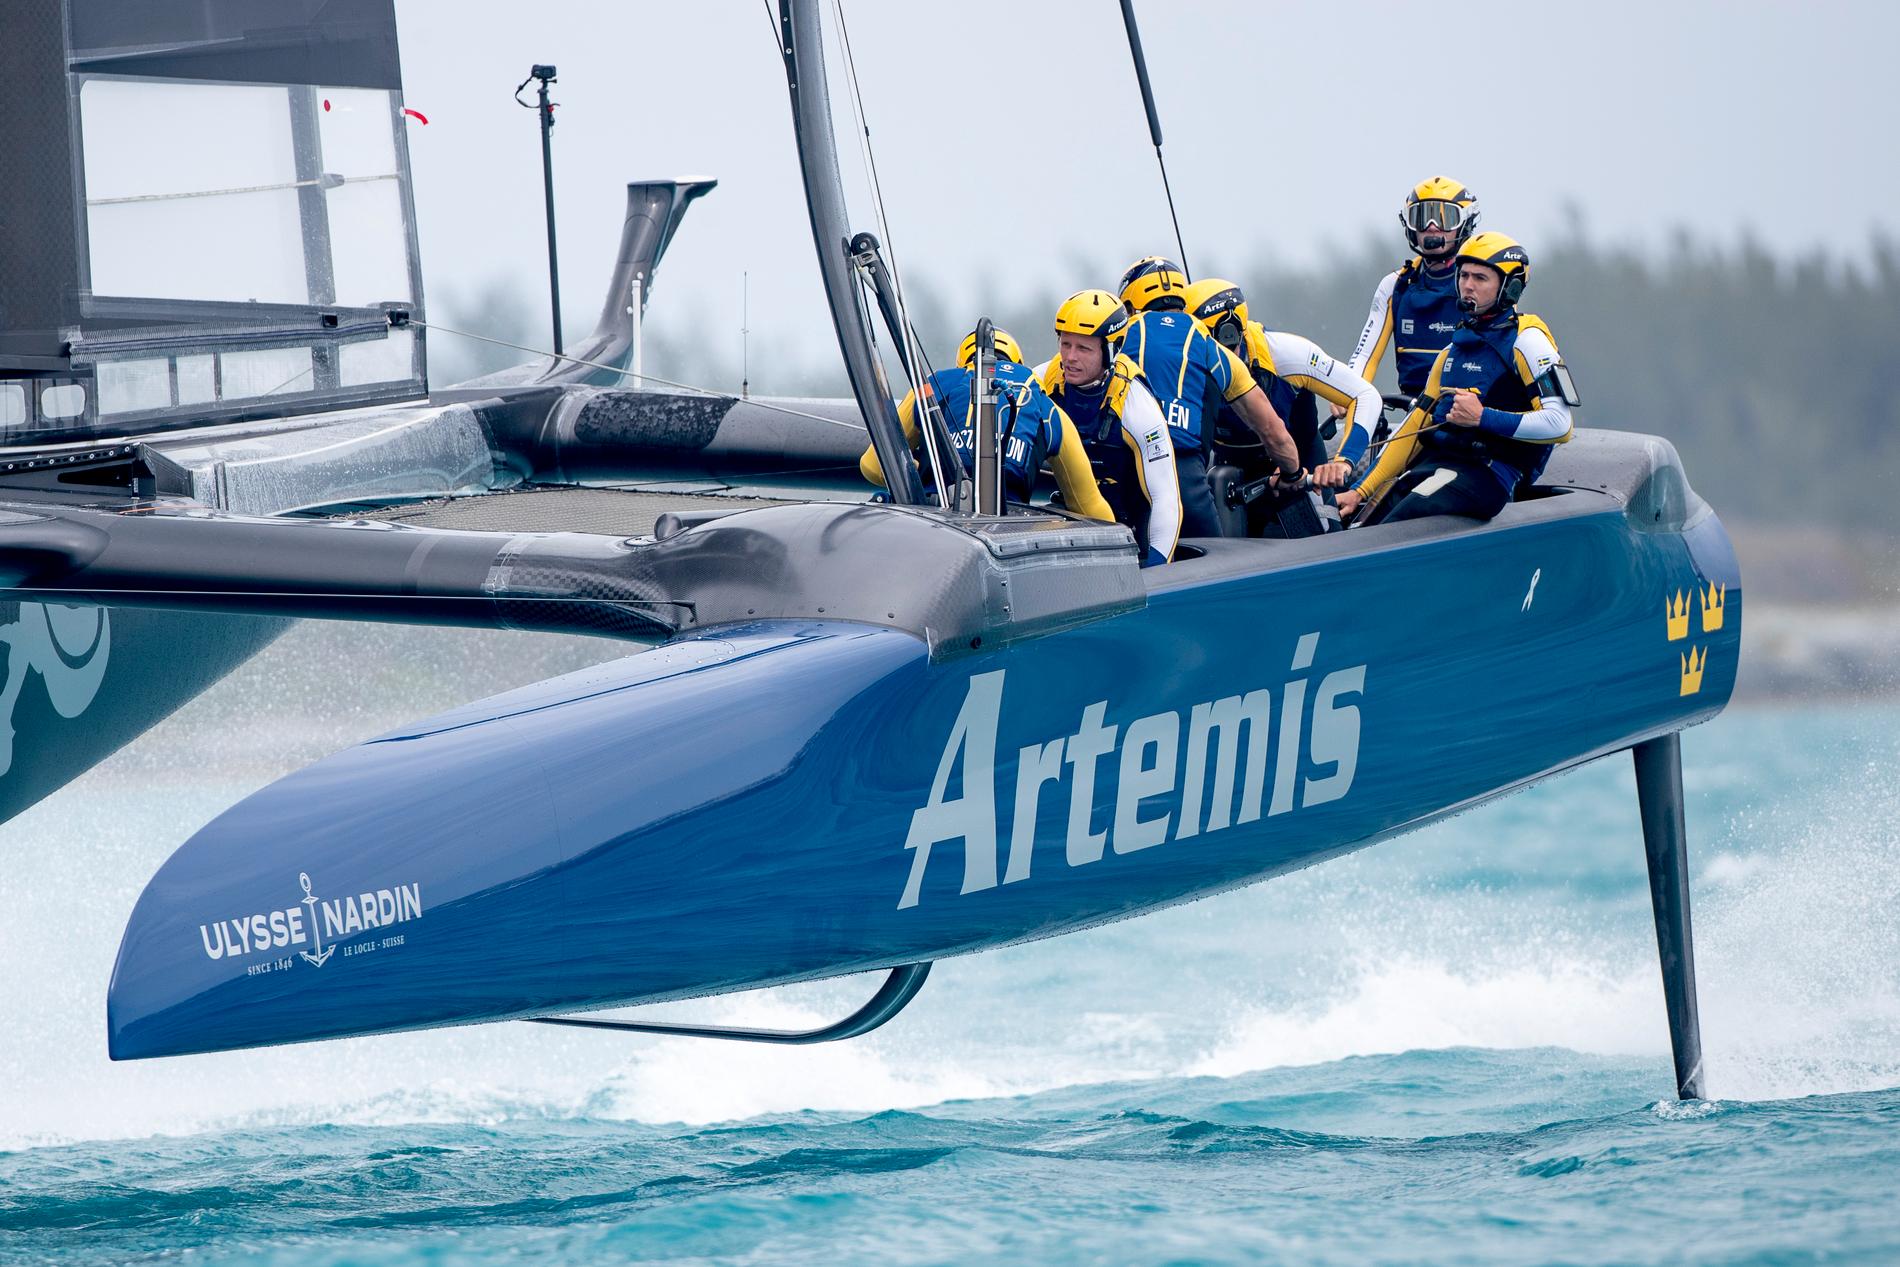 GULD I SEGLET. Artemis siktar på att ta hem ”The Cup” med Turbobåten i farter runt 40–50 knop.  